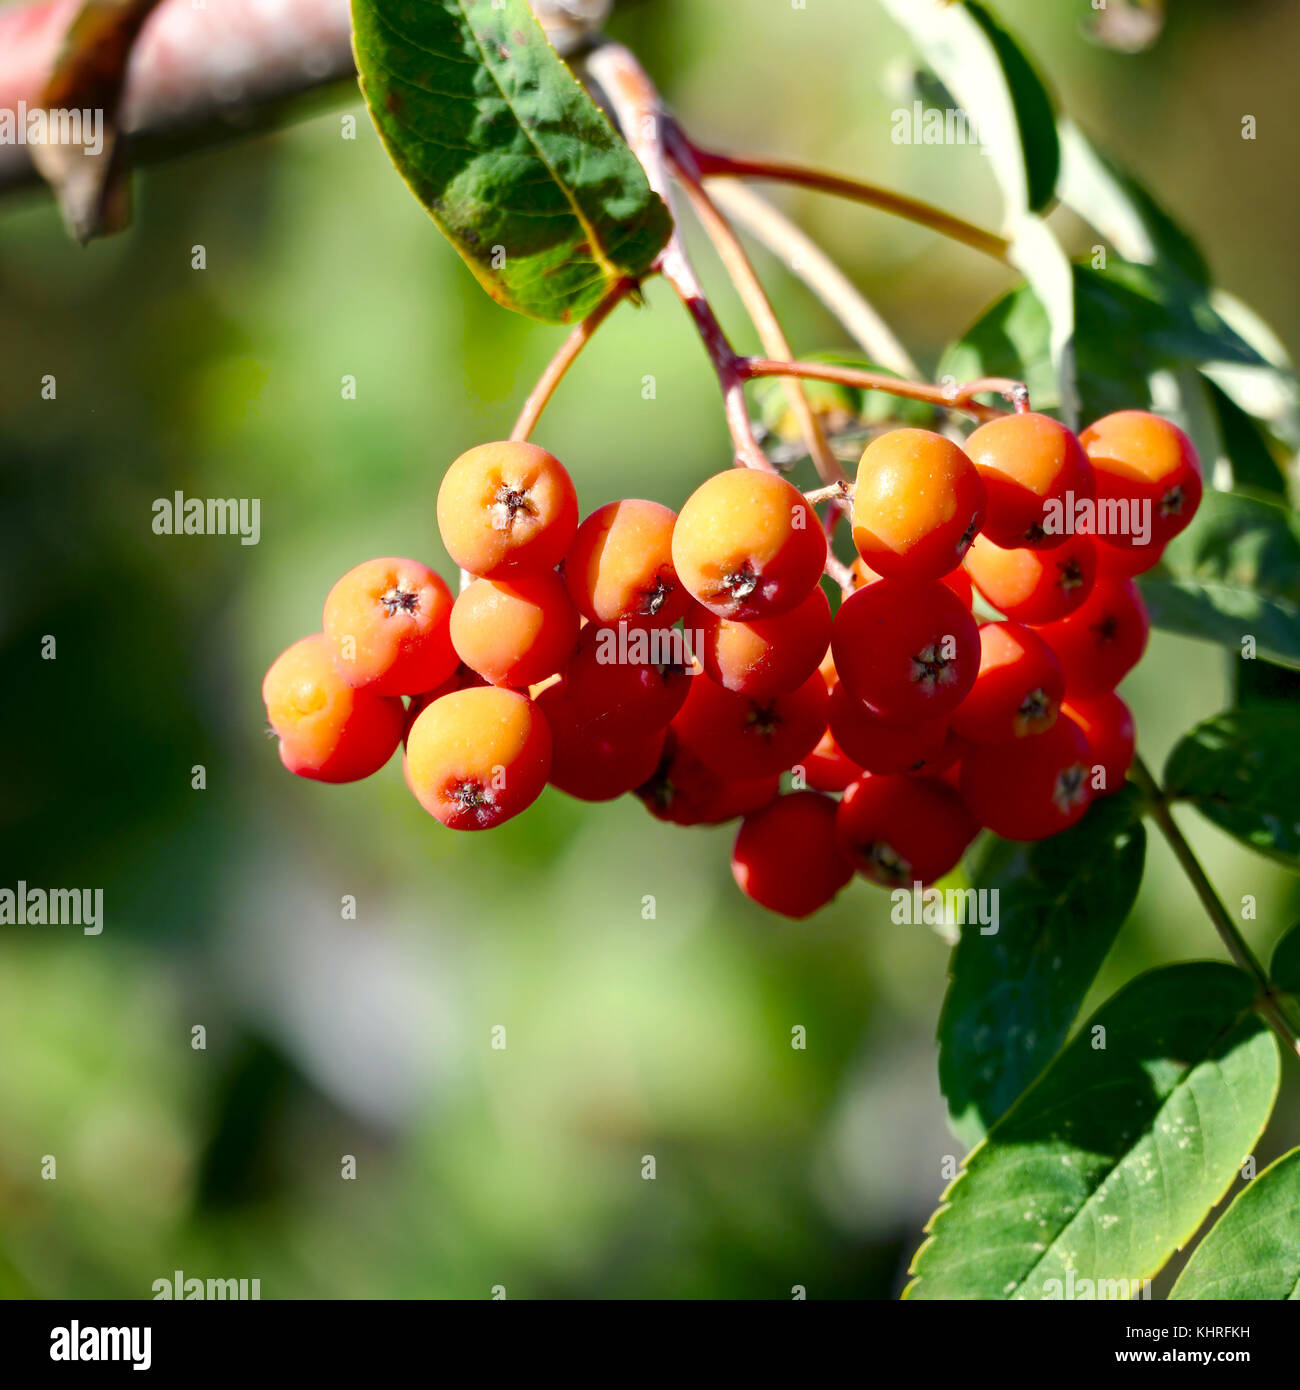 Rowan berries on blurry background. Stock Photo